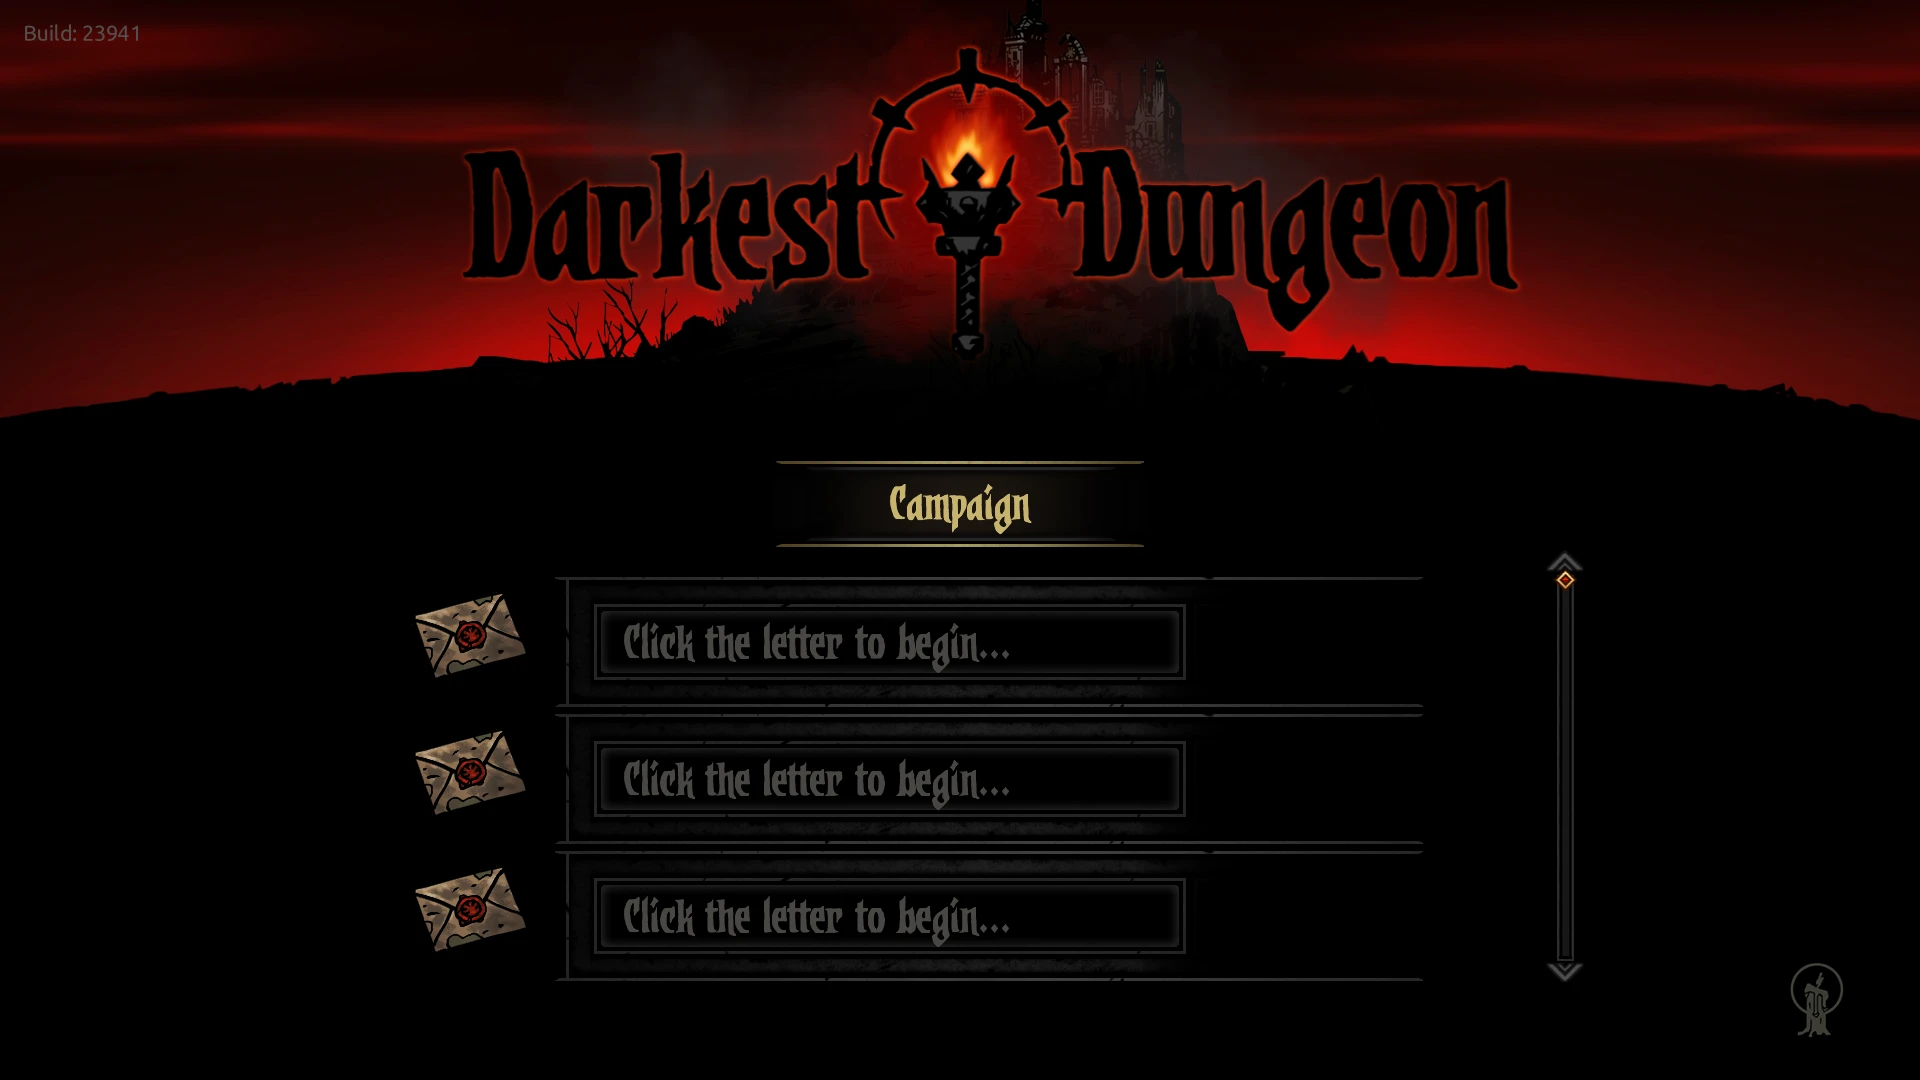 nexus mod manager darkest dungeon install